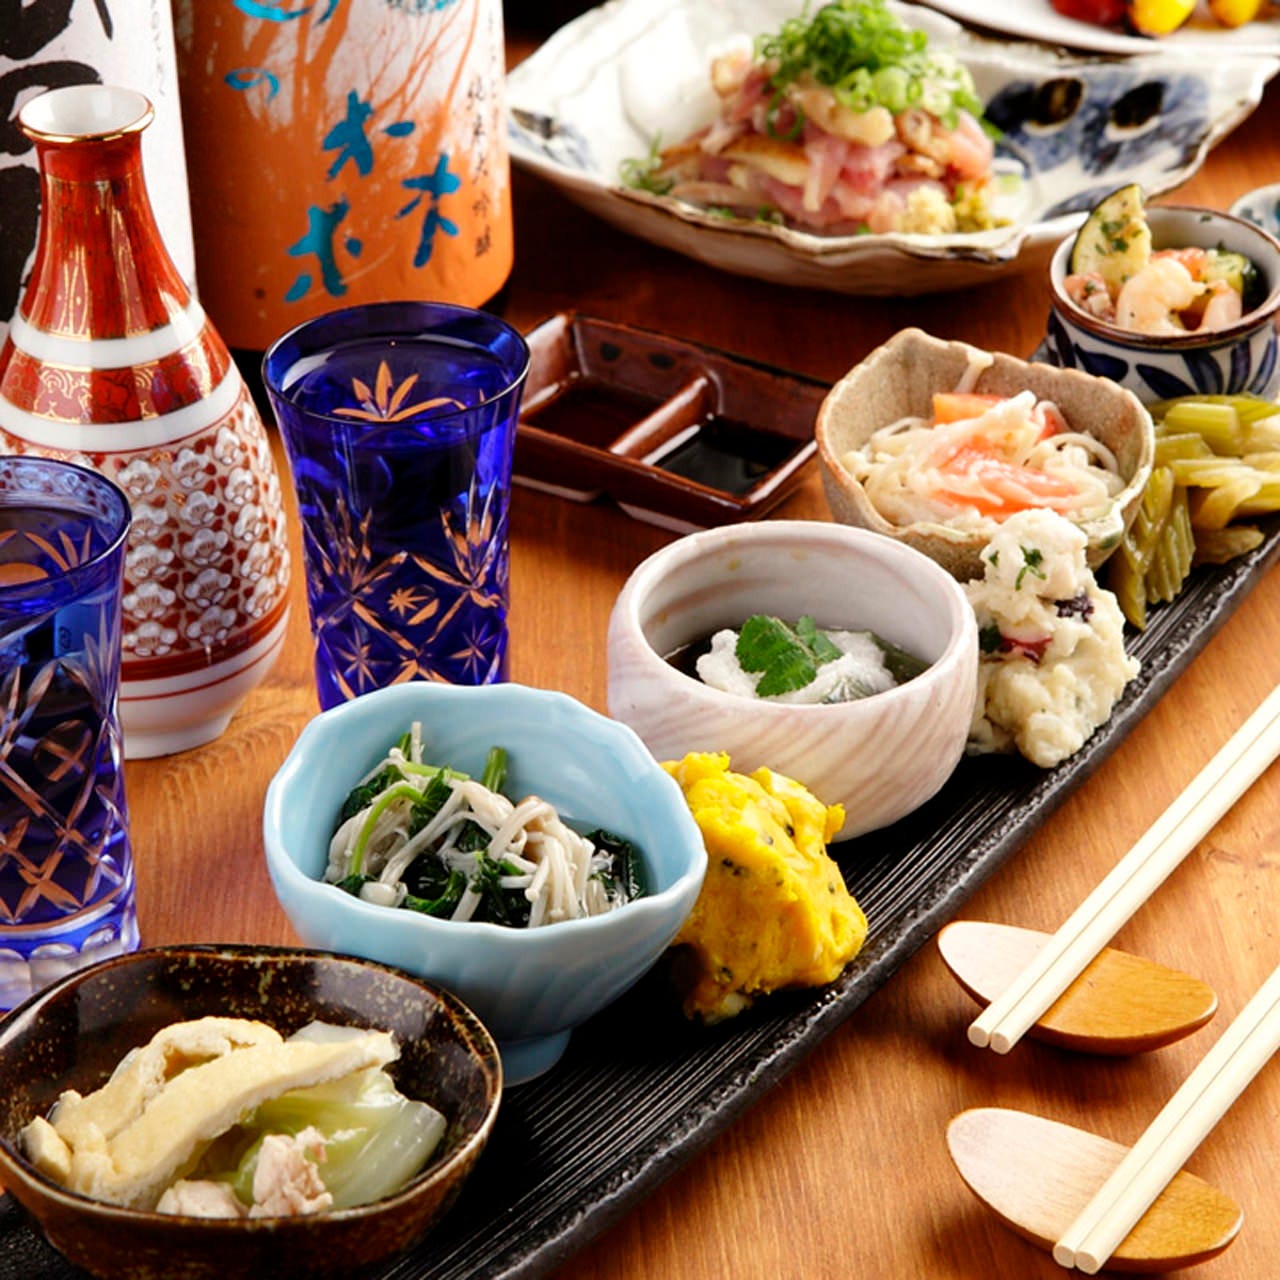 日本酒の味をより引き立てる
逸品を豊富に取り揃えてます